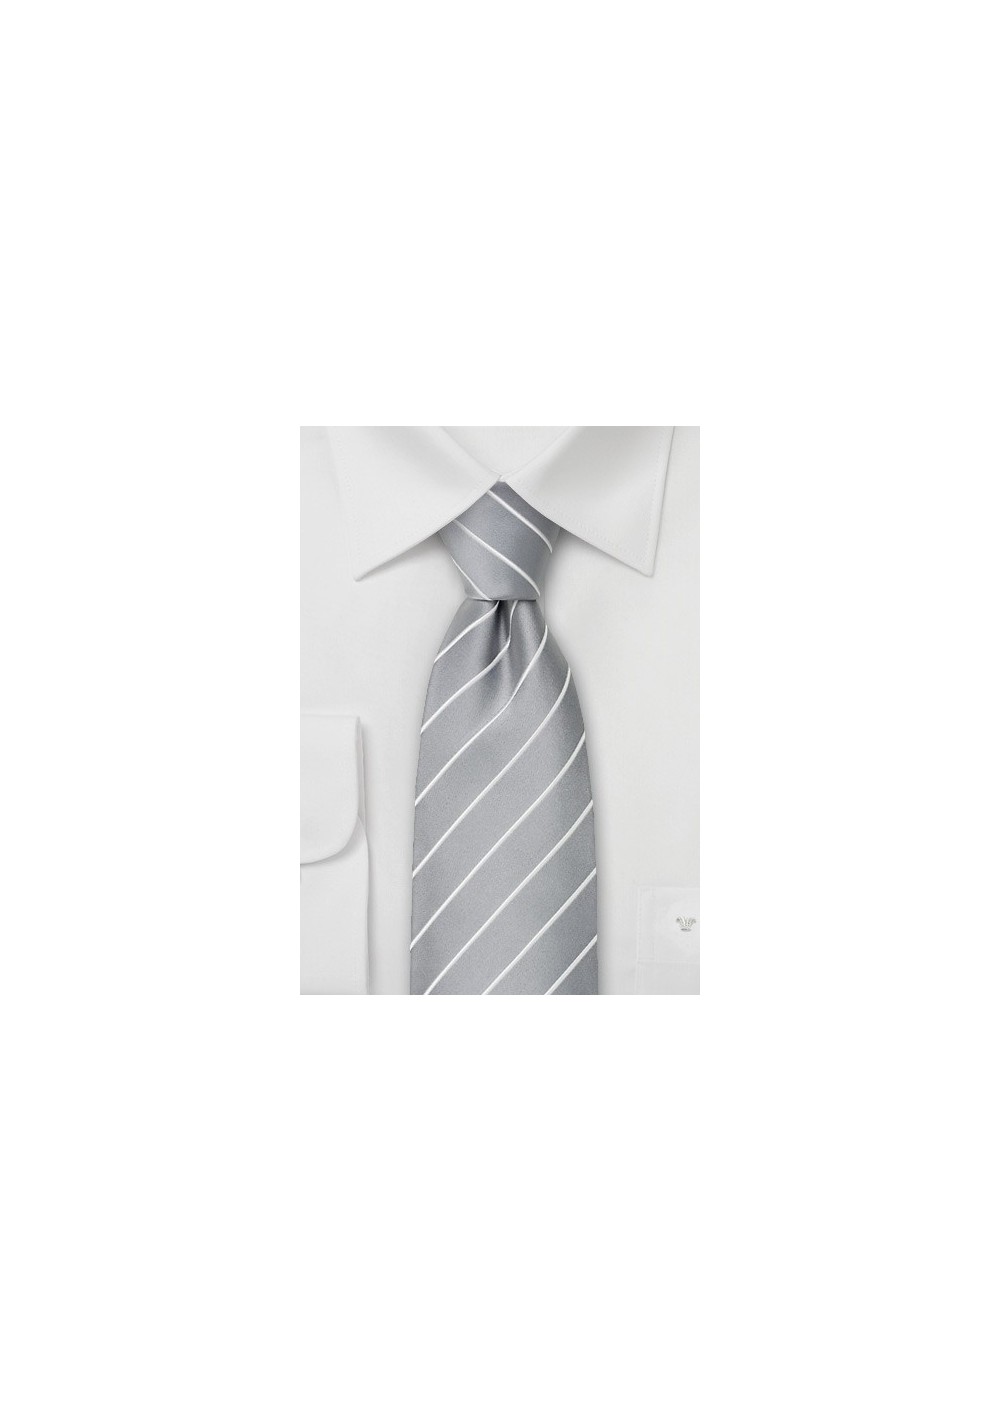 Silver Neckties - Elegant Silver Silk Tie